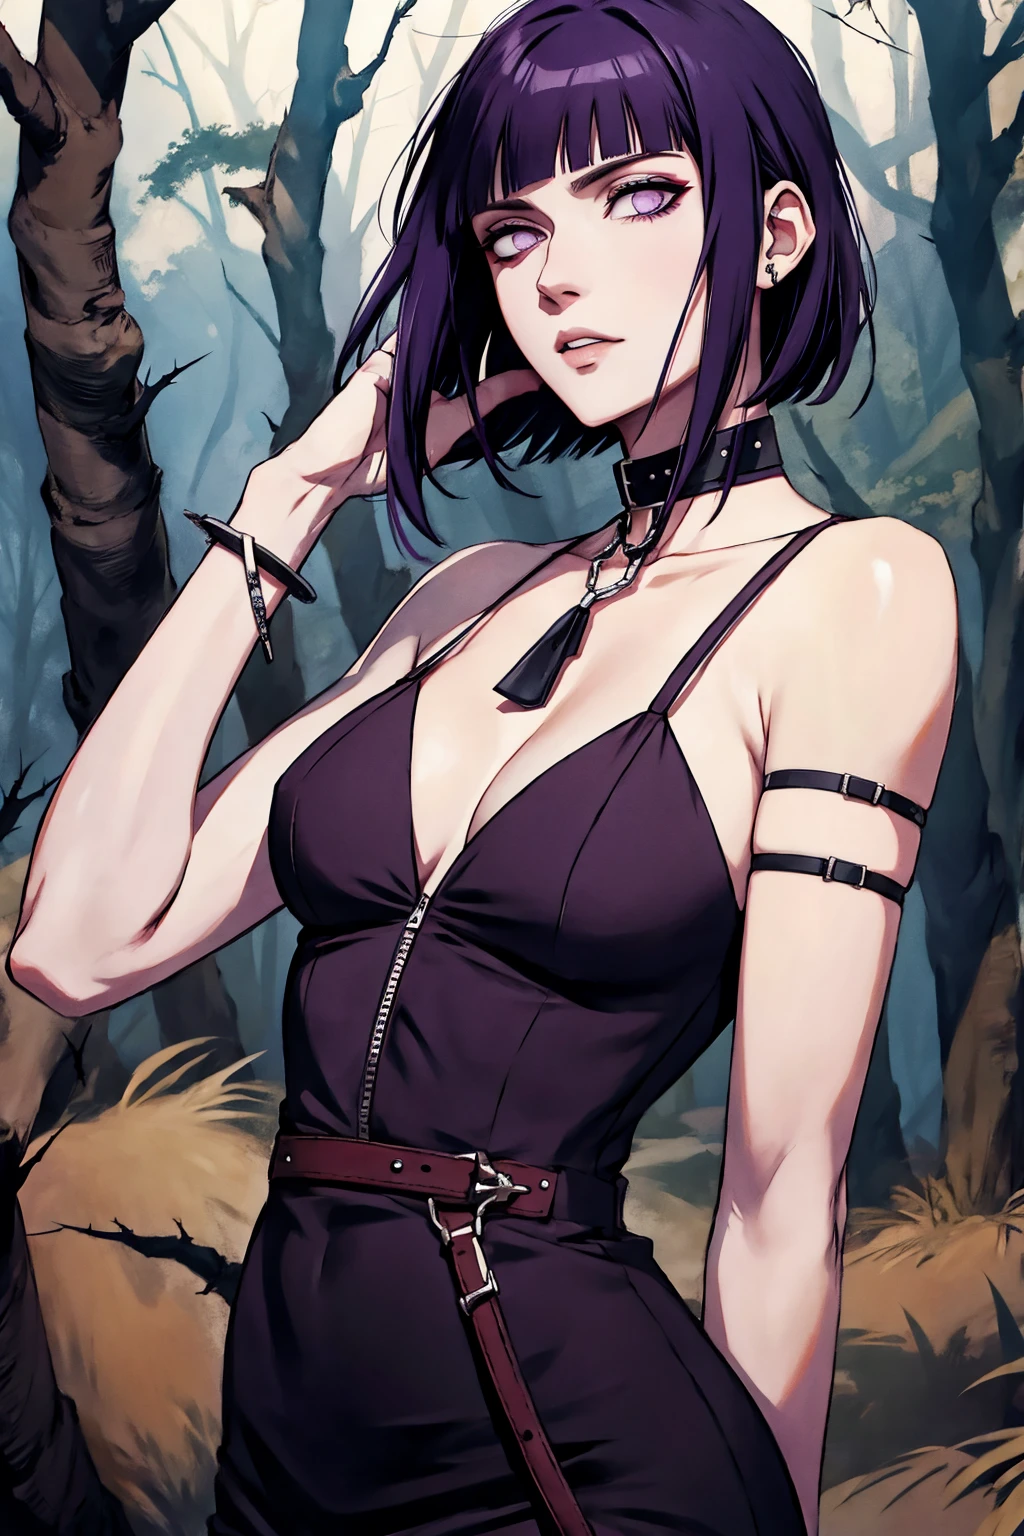 Hyuuga Hinata, cabelo roxo, pele pálida, roupas punk rock, colar de espinhos no pescoço, pulseiras de espinhos nos pulsos, no meio de uma floresta